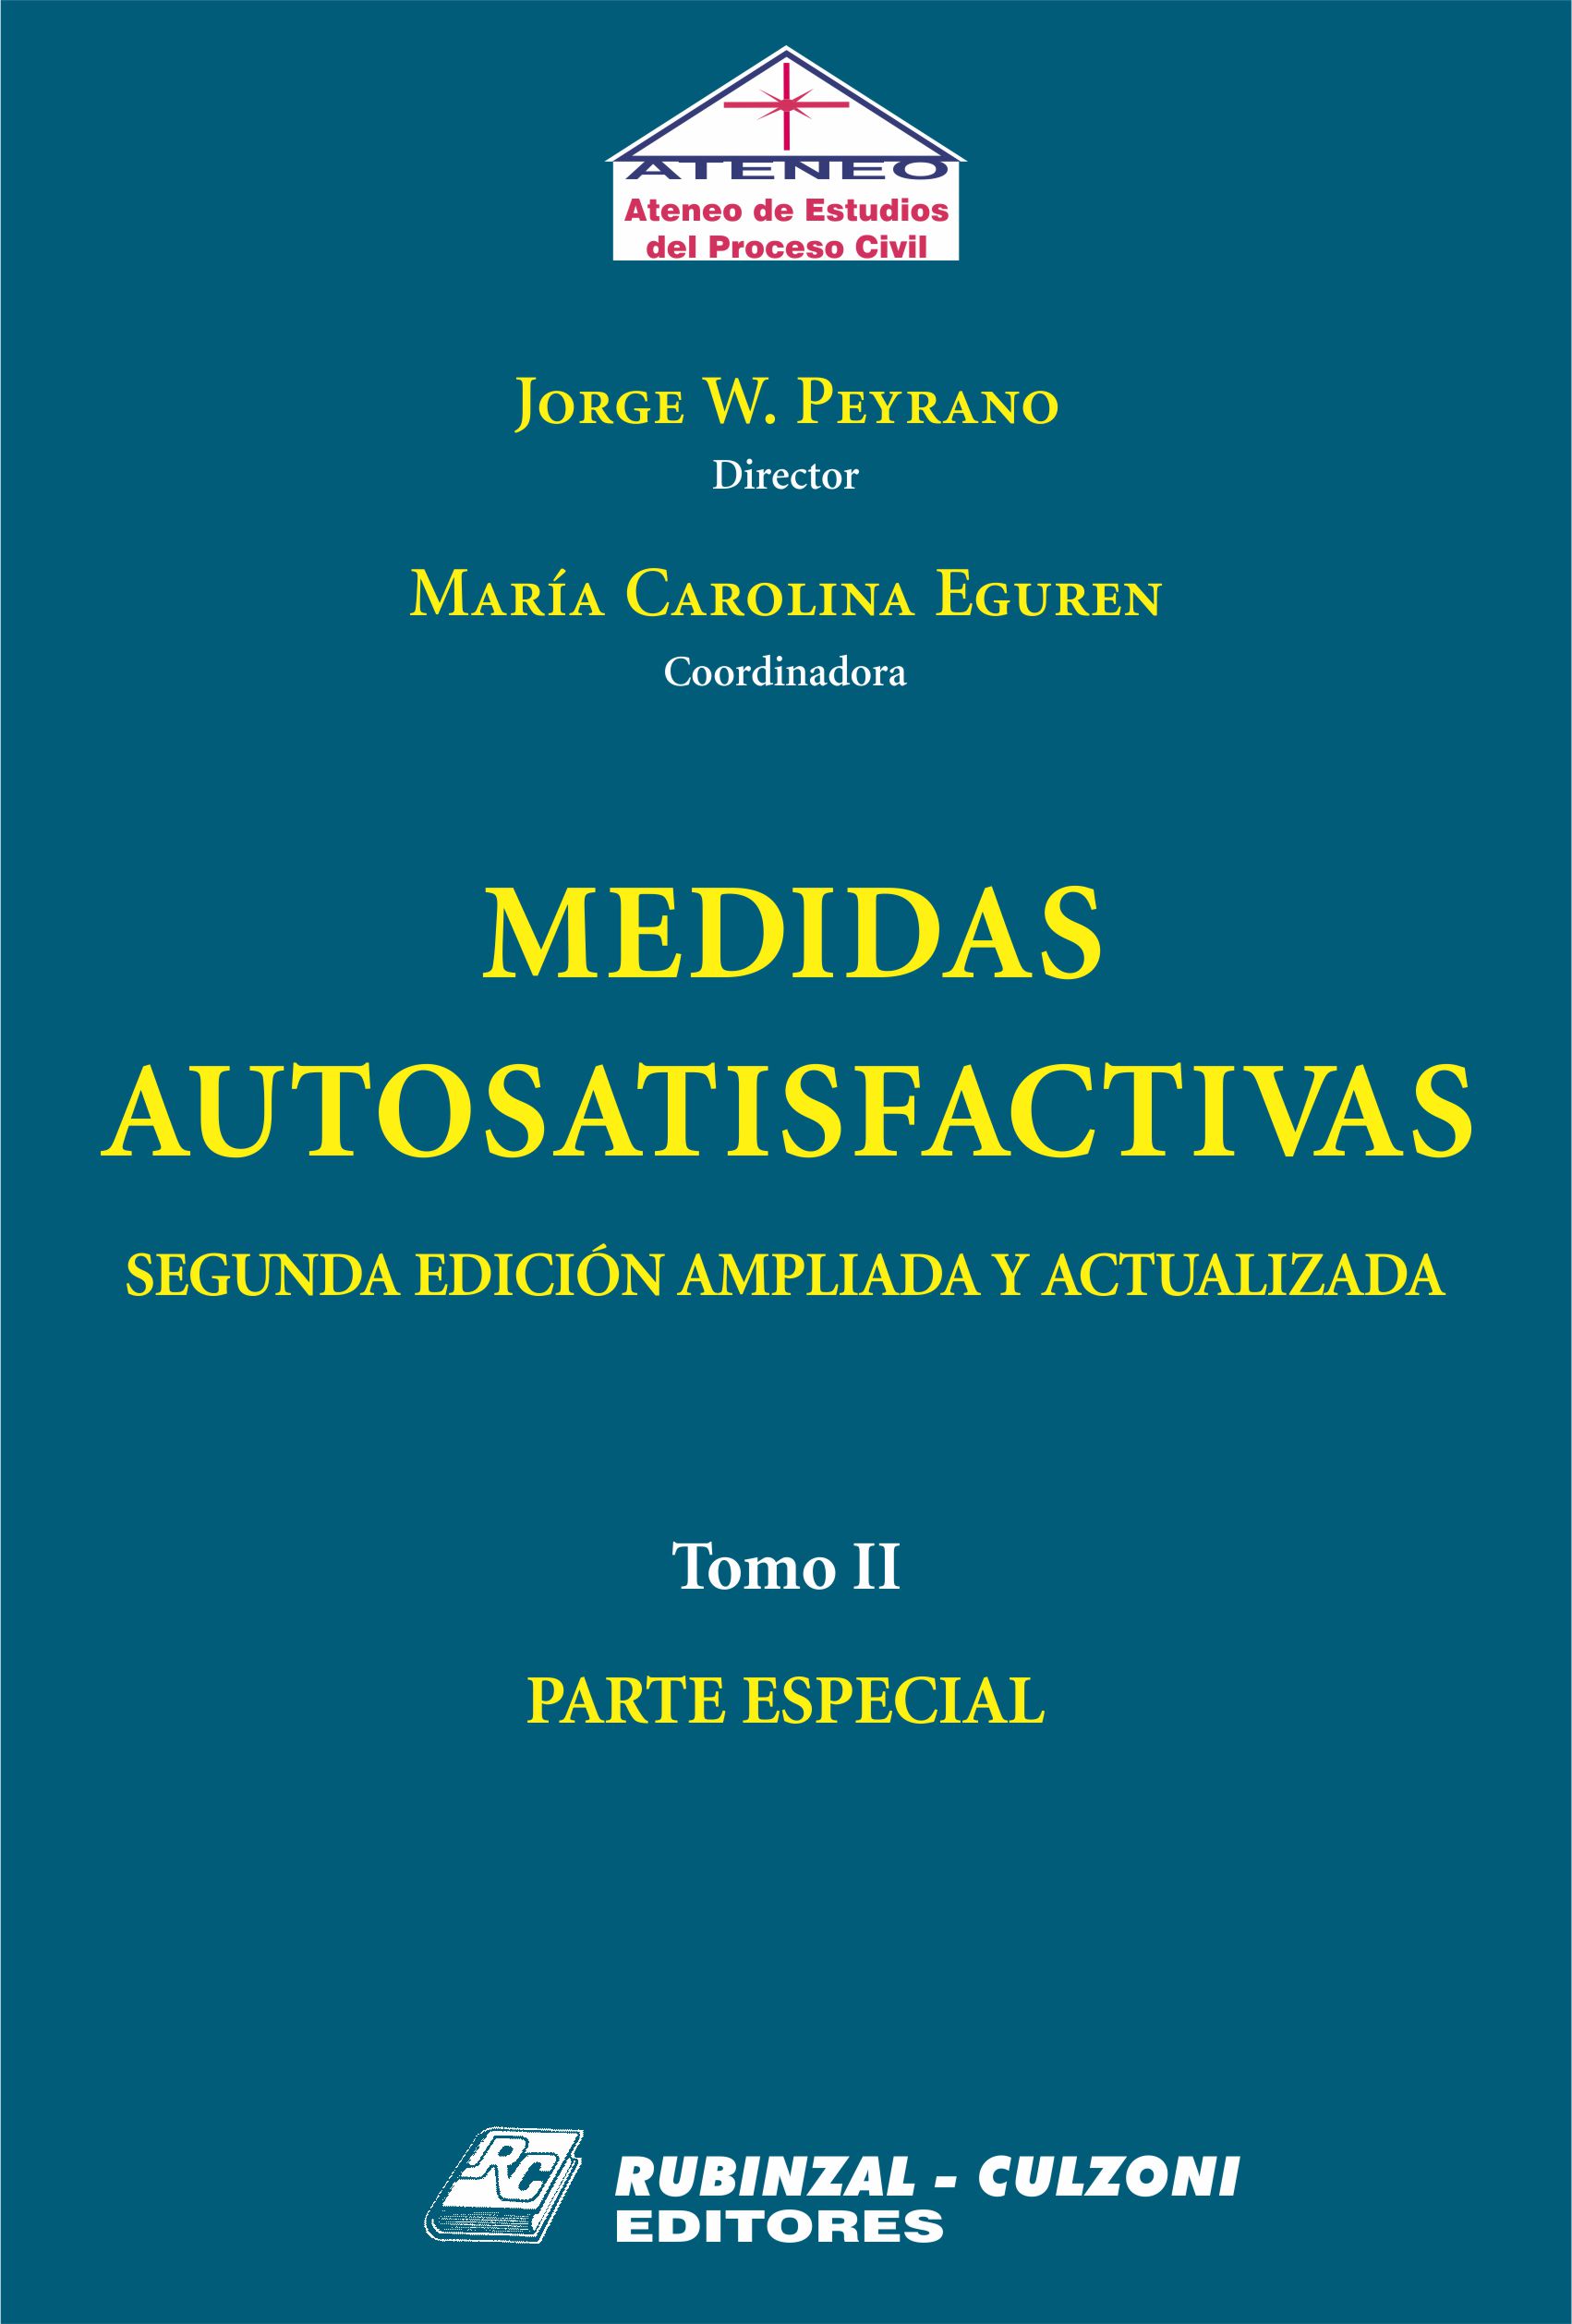 Medidas Autosatisfactivas. 2ª Edición ampliada y actualizada. - Tomo II. Parte Especial.